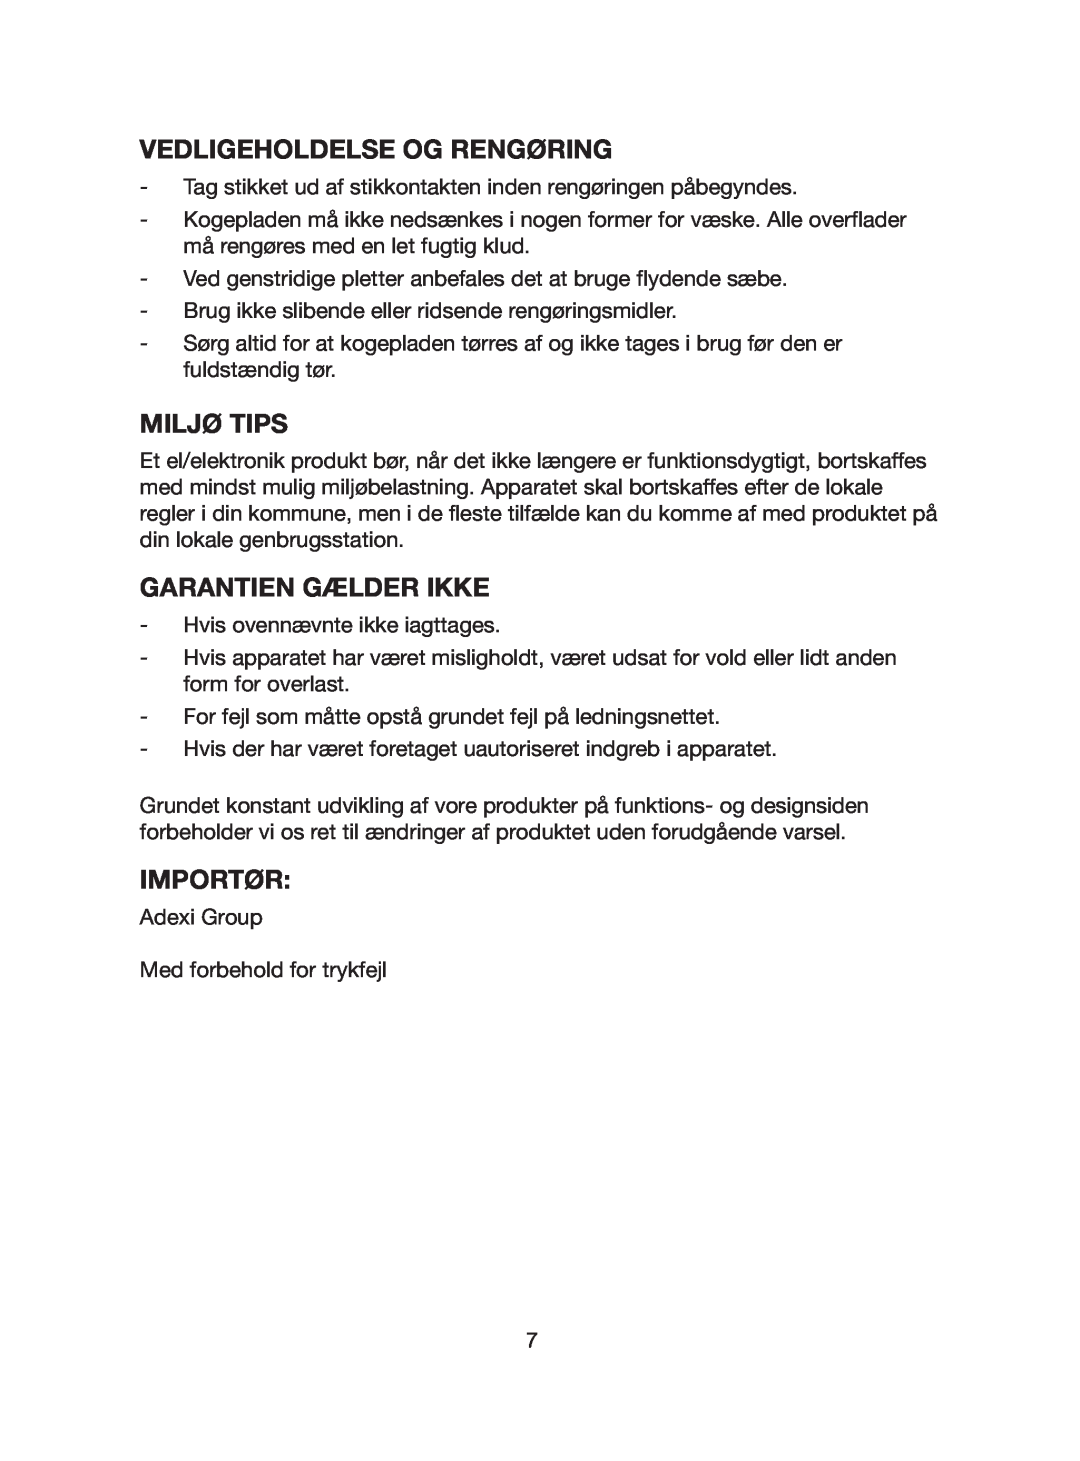 Melissa 750-024 manual Vedligeholdelse Og Rengøring, Miljø Tips, Garantien Gælder Ikke, Importør 